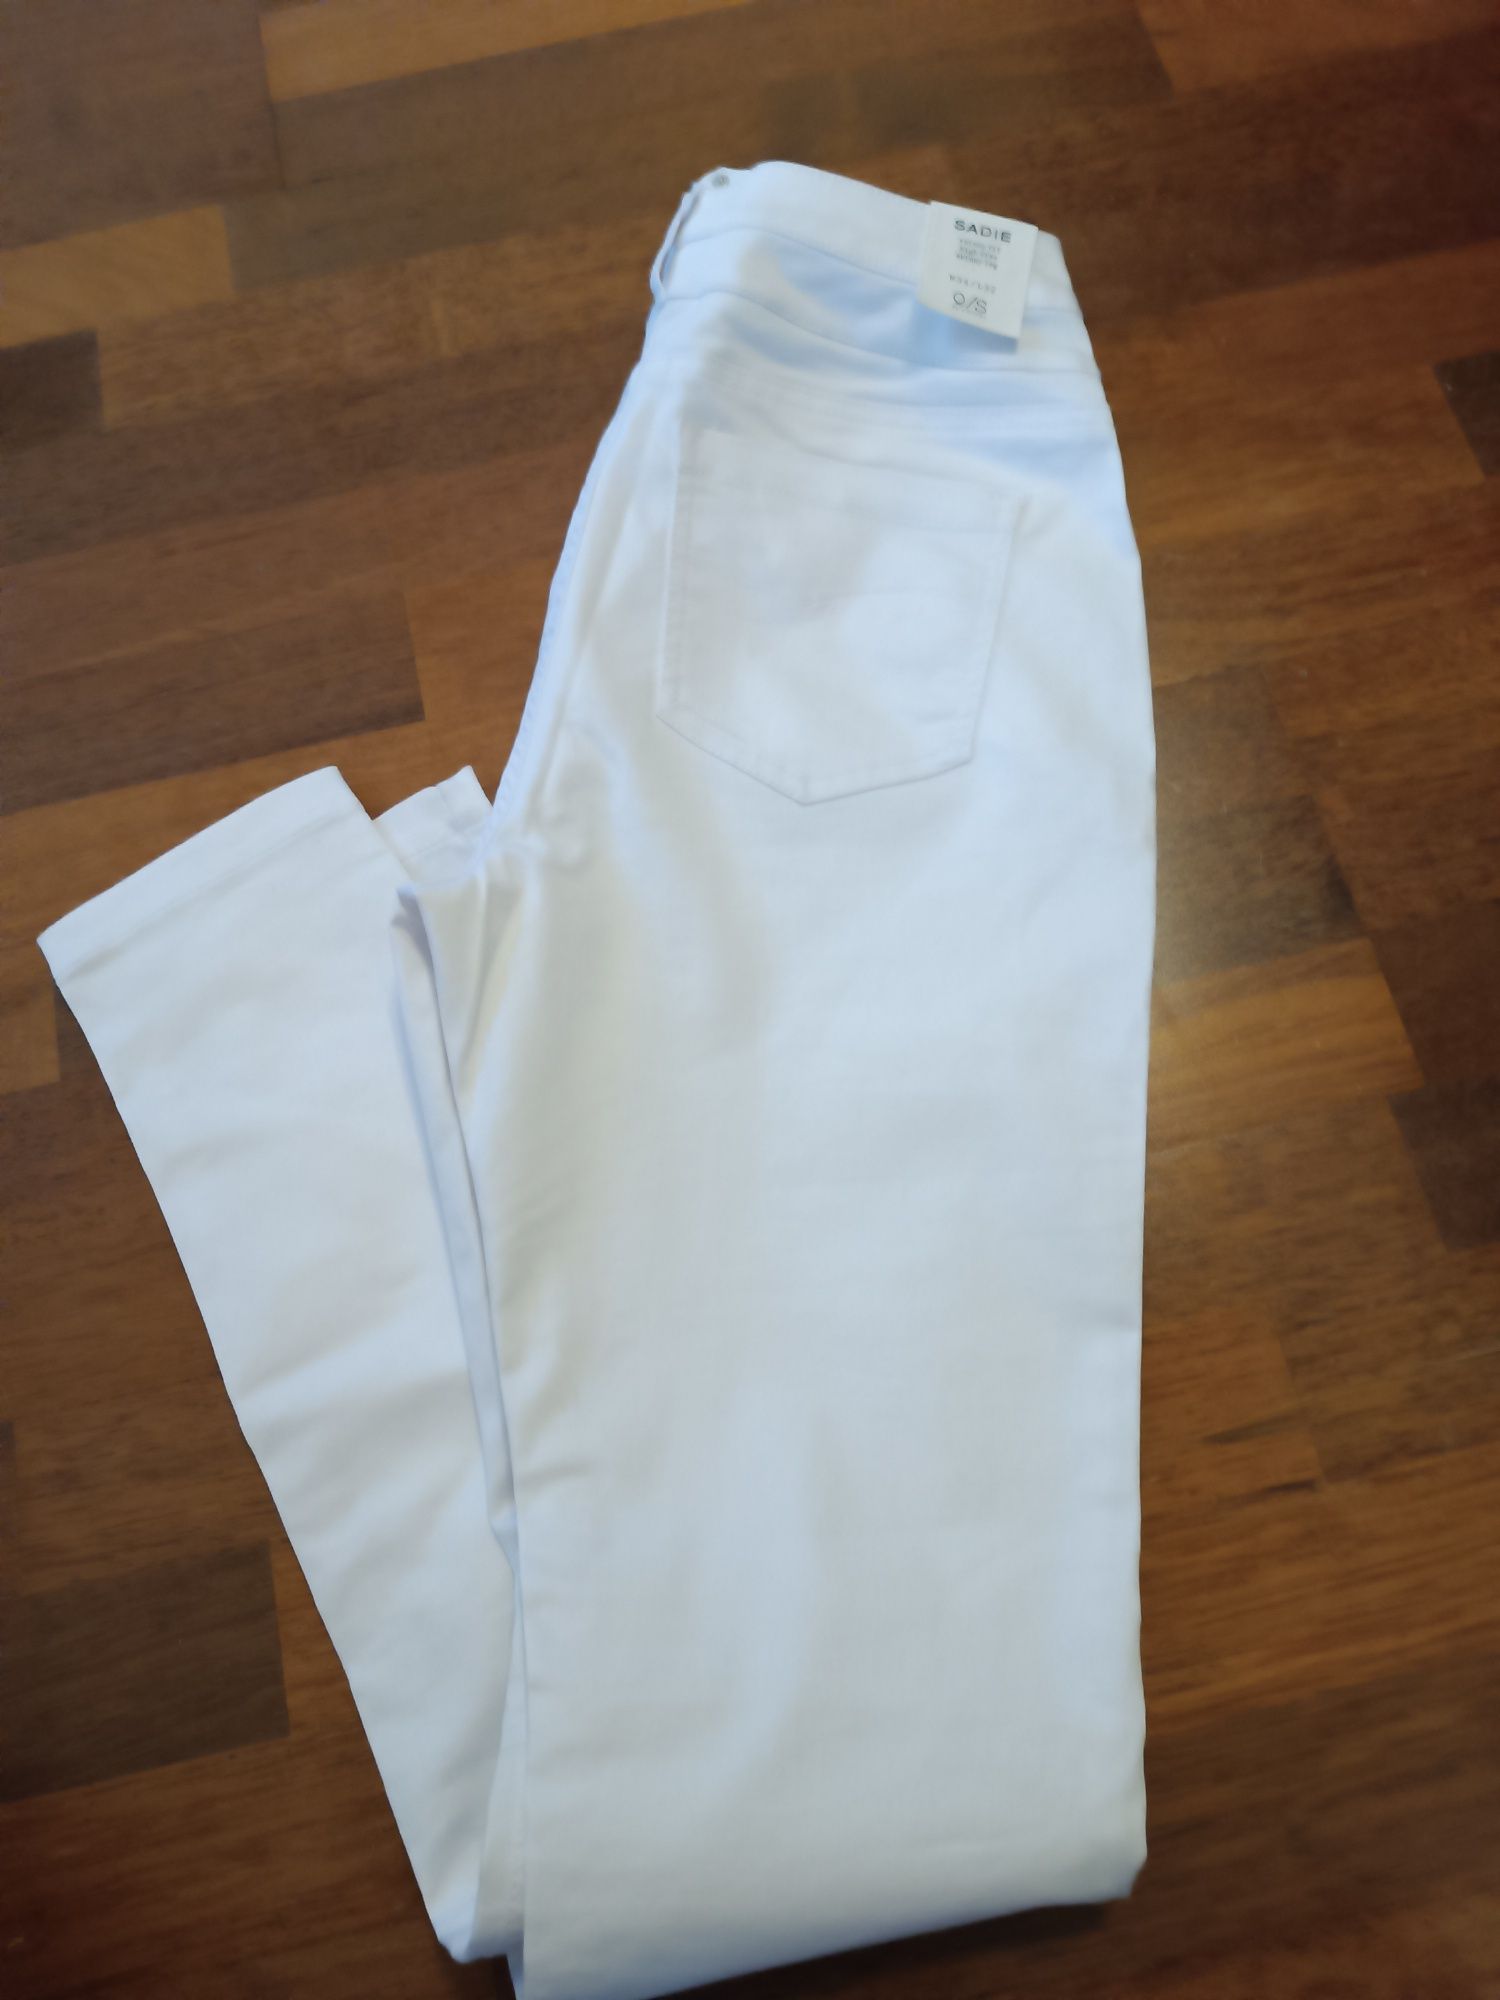 Spodnie rurki białe q/s st. Oliver 34/32 sadie